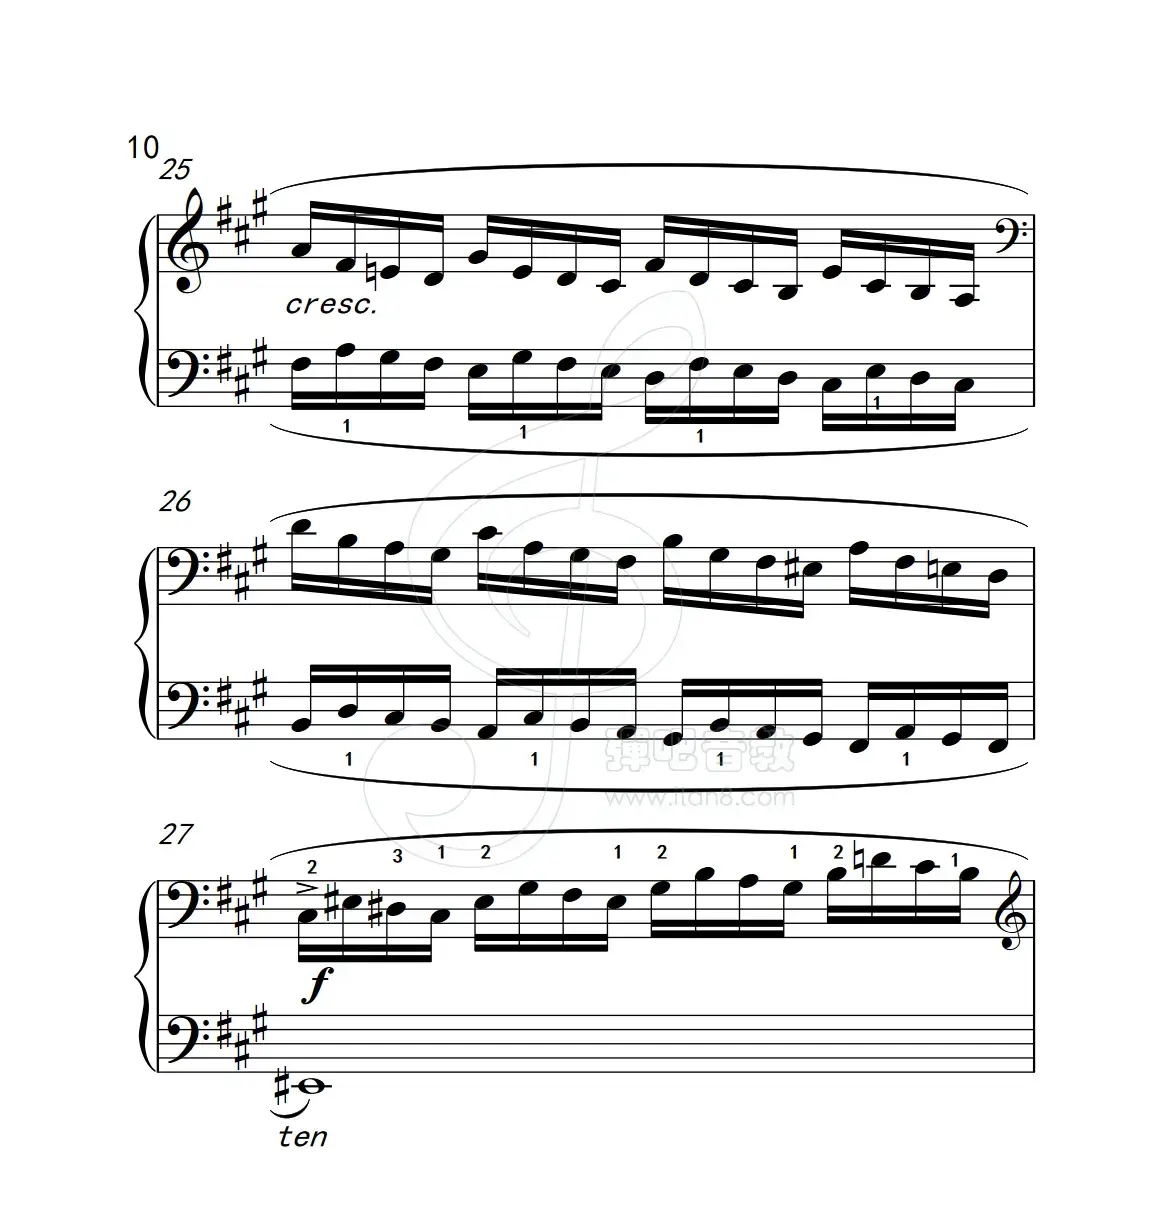 练习曲 6（克拉莫钢琴练习曲60首）